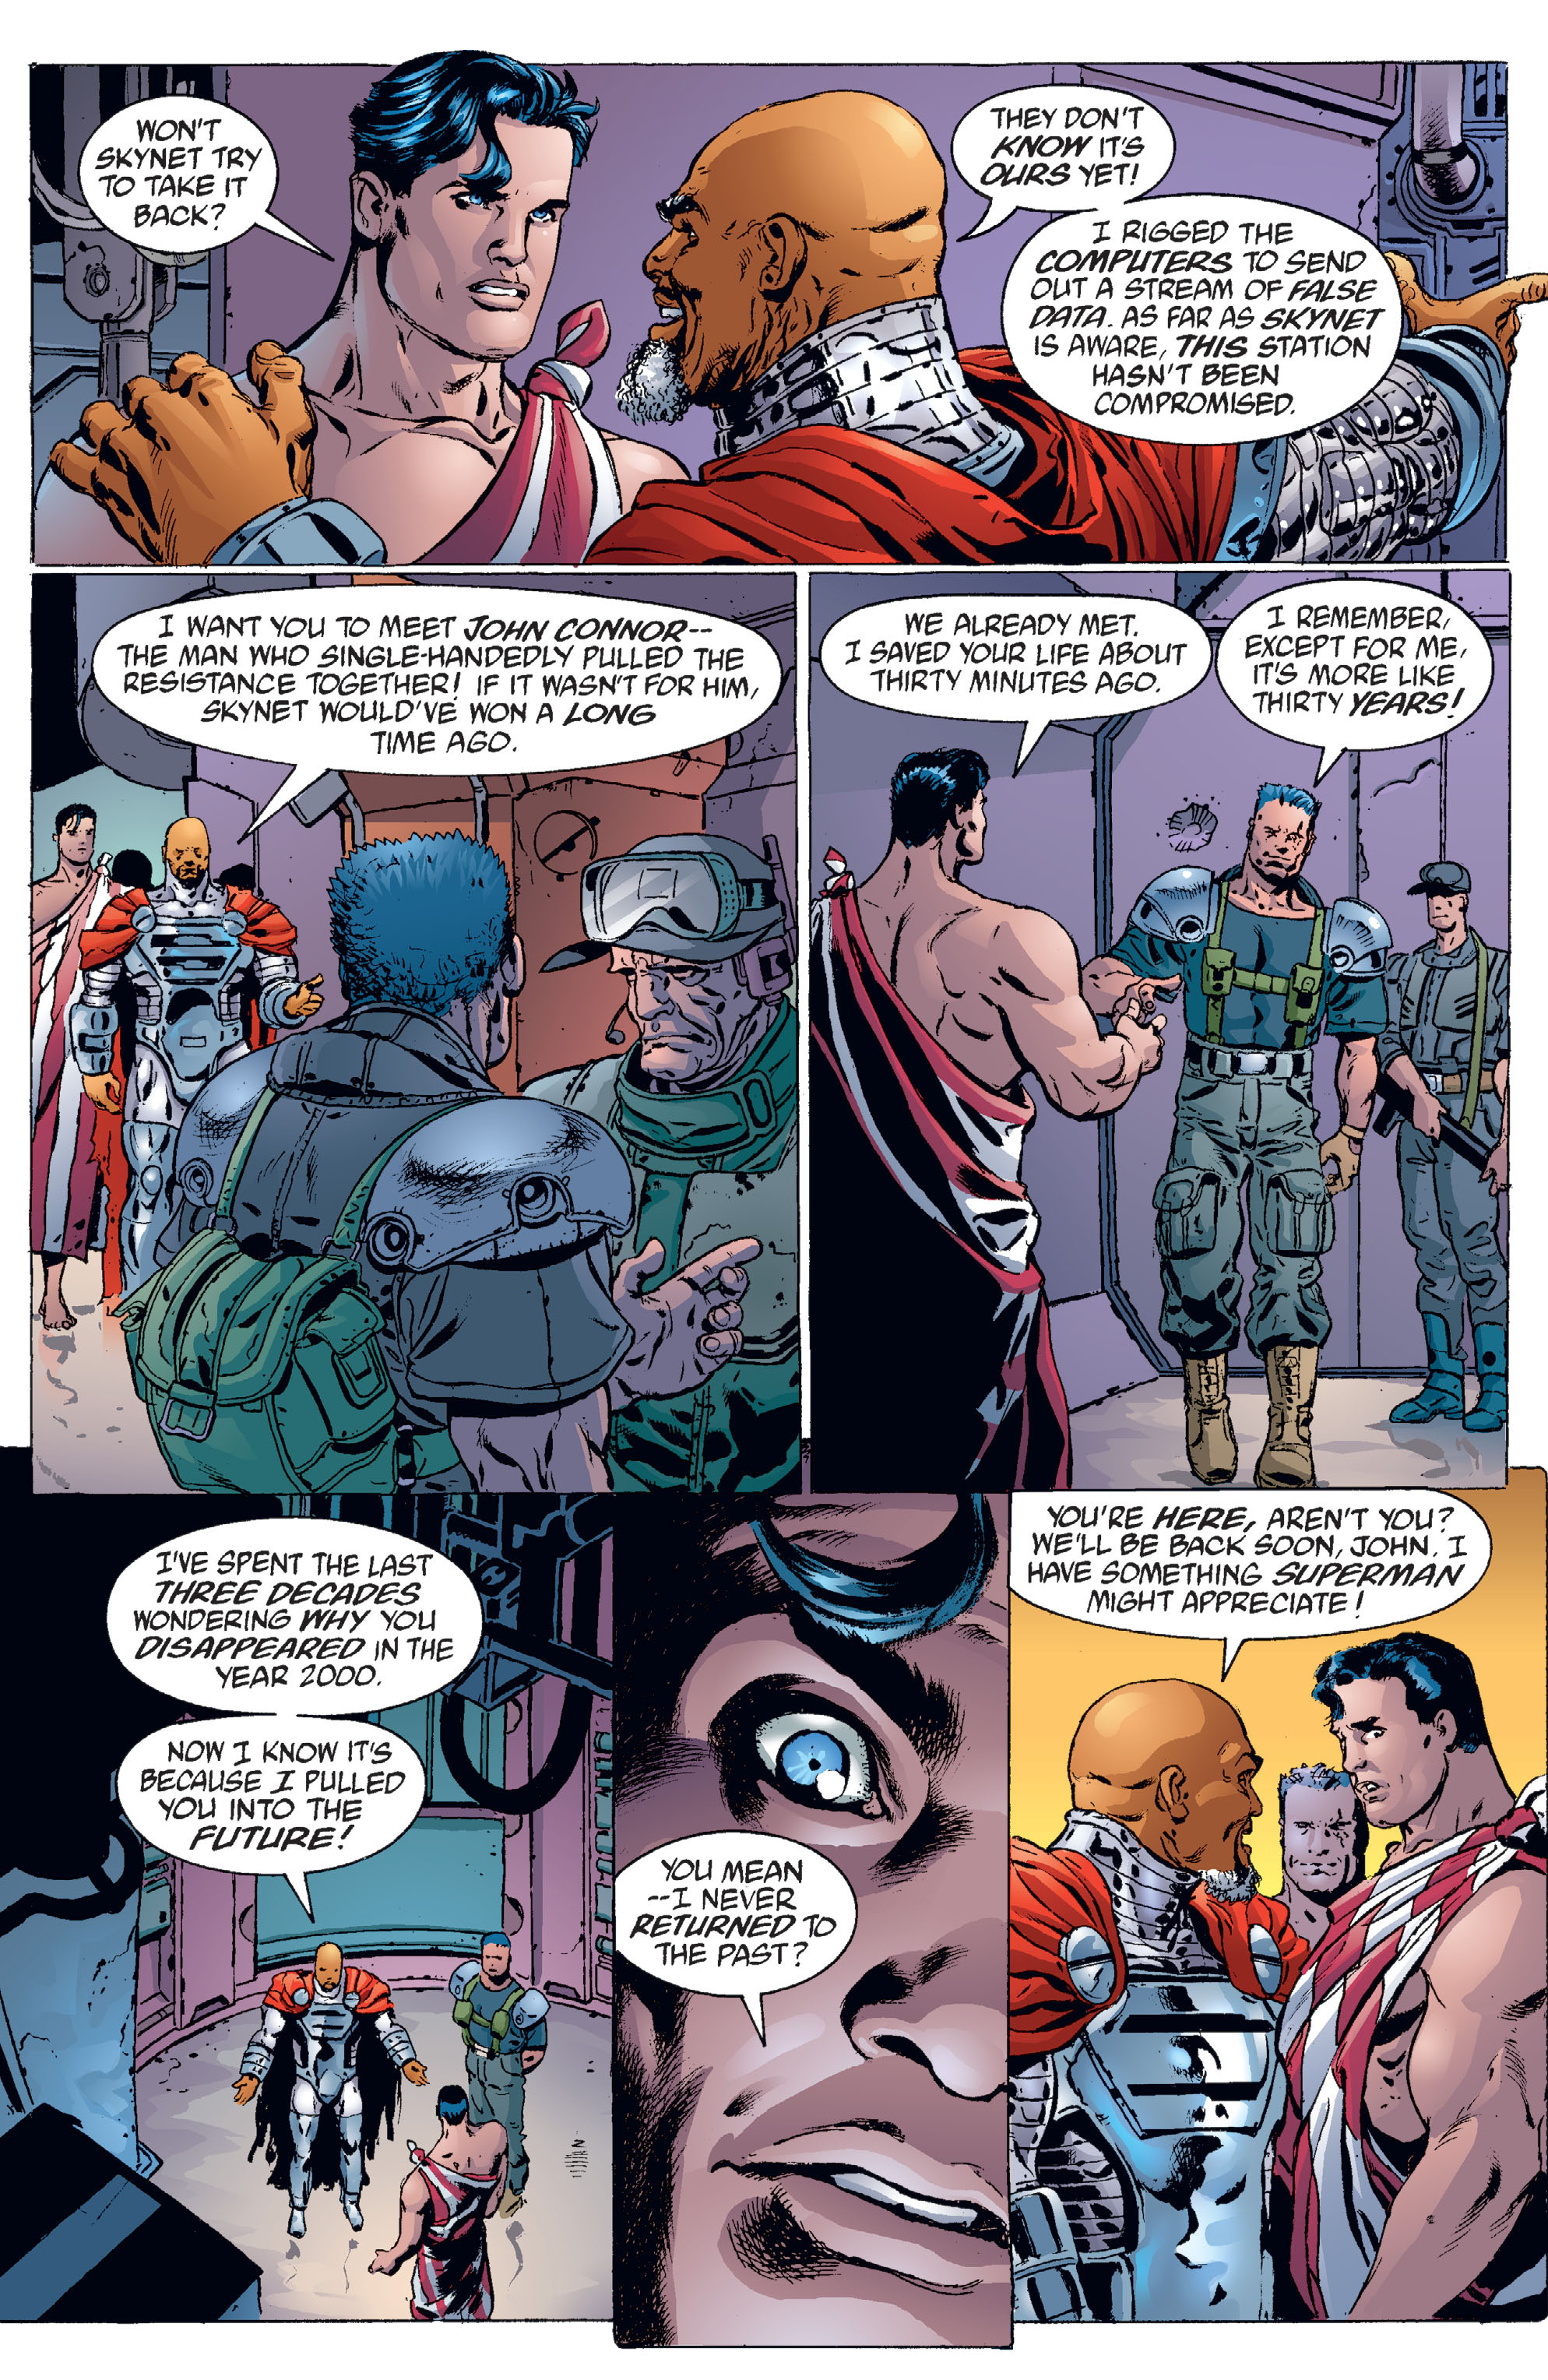 DC Comics/Dark Horse Comics: Justice League Full #1 - English 173